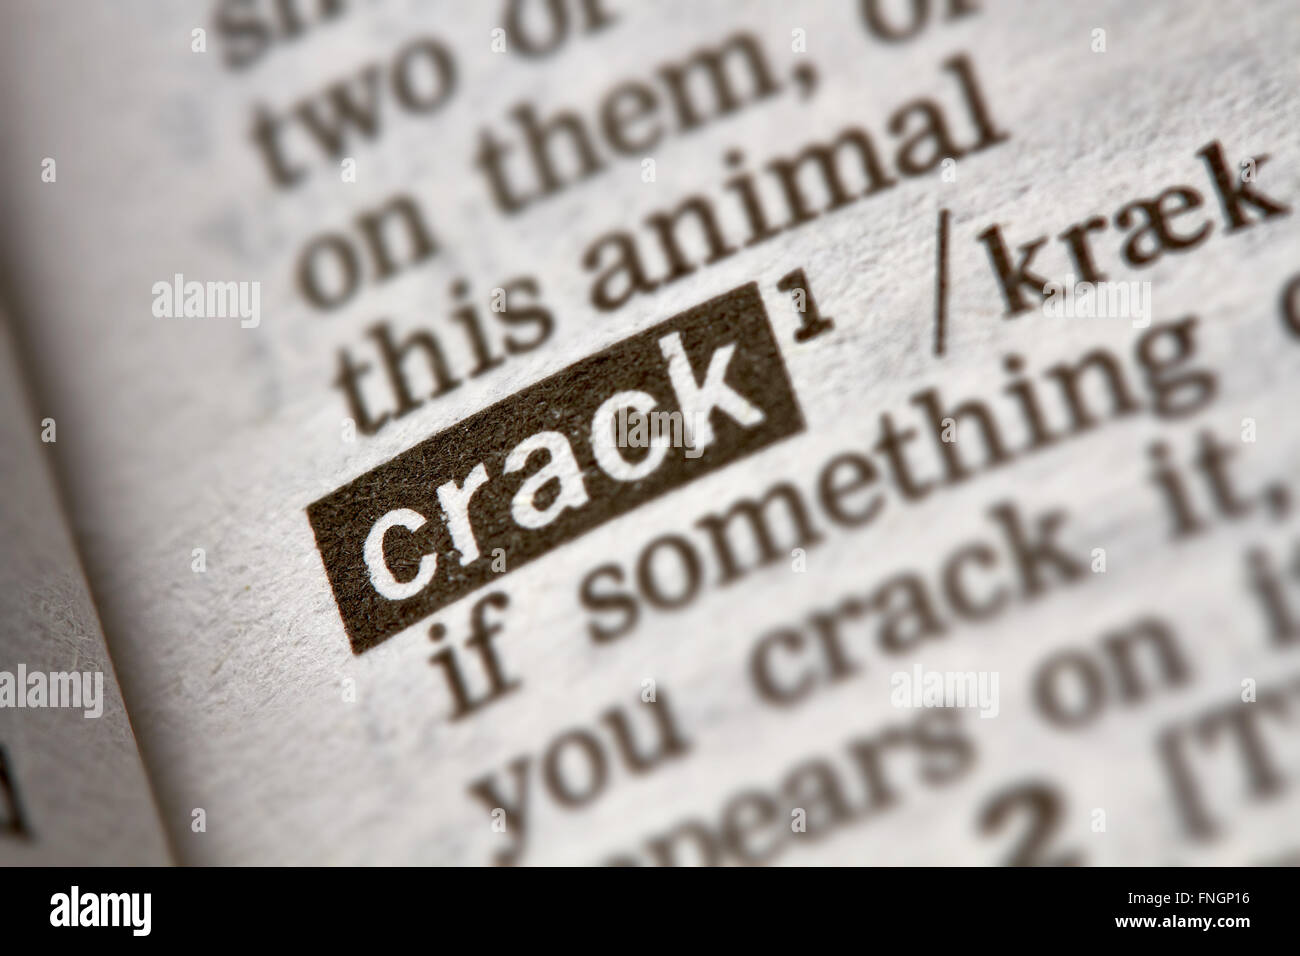 Crack definizione parola di testo nella pagina del dizionario Foto Stock